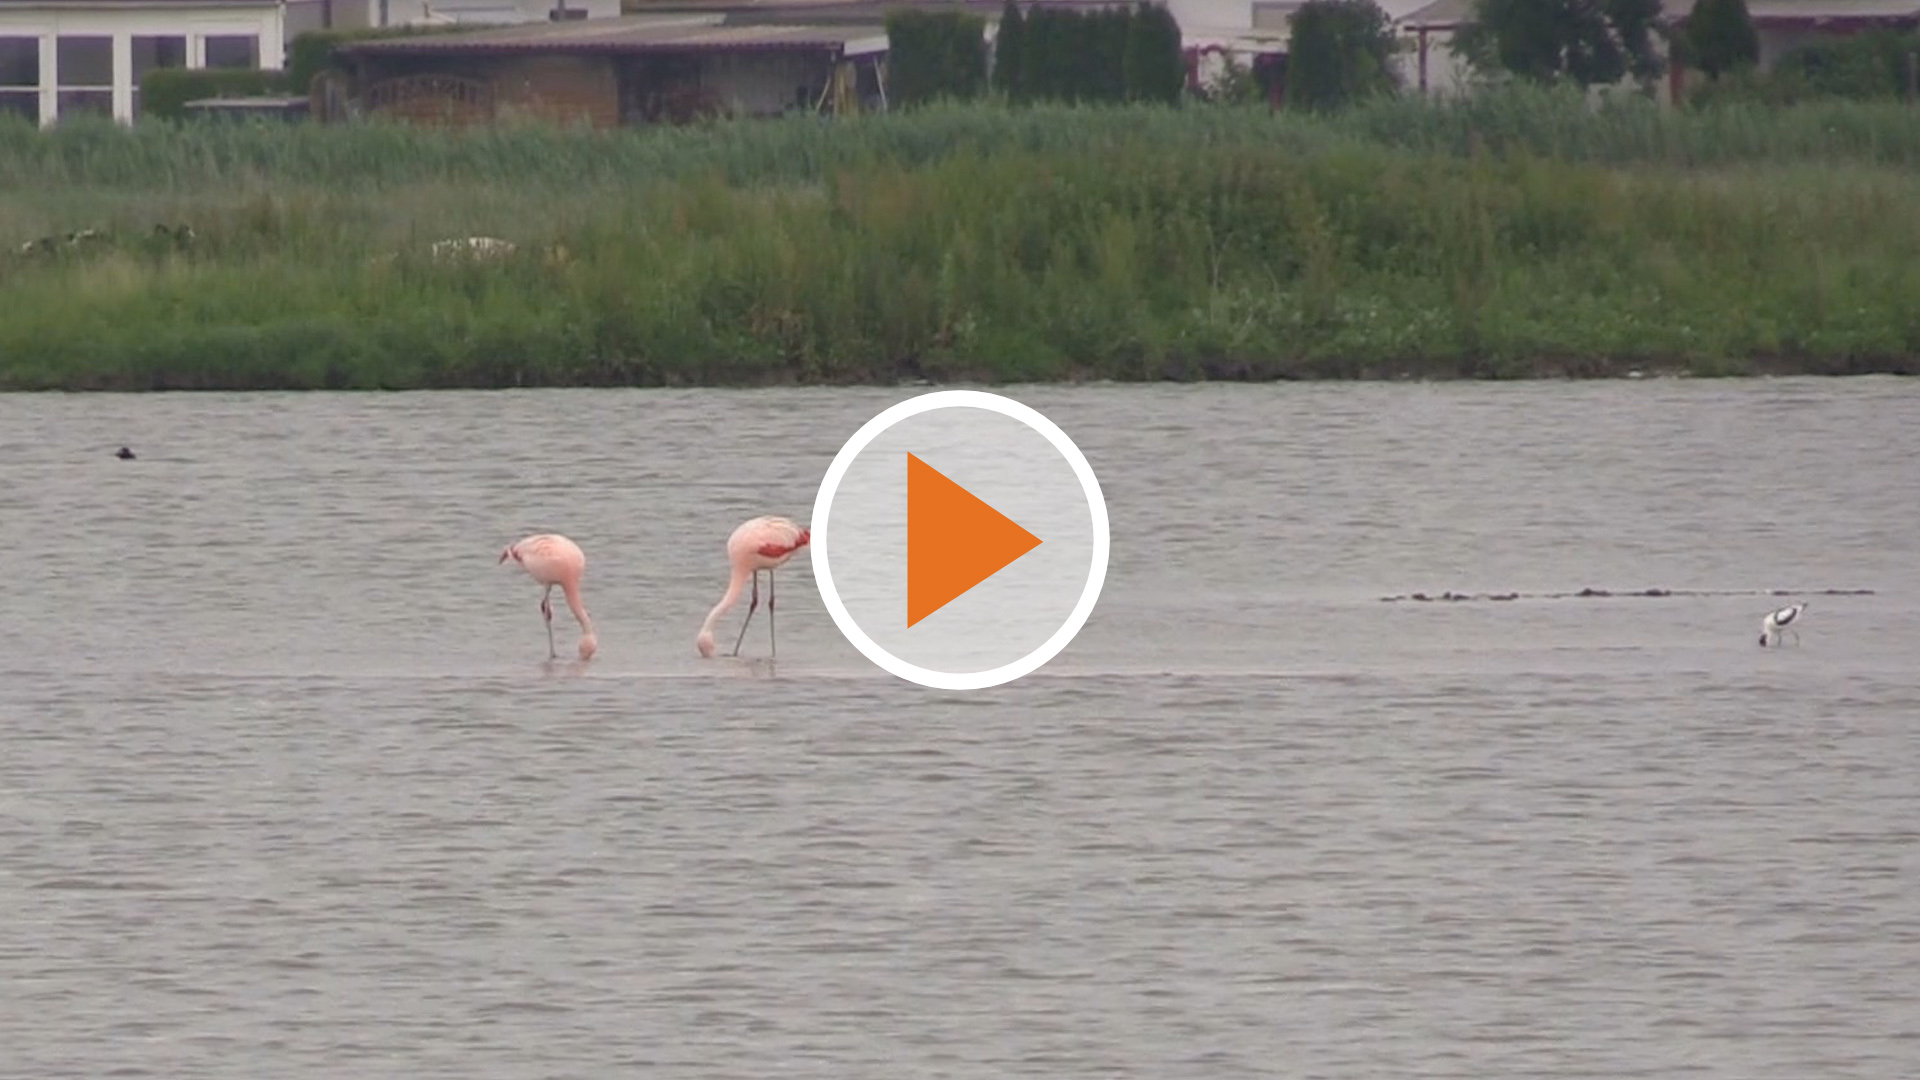 Screen_Flamingo